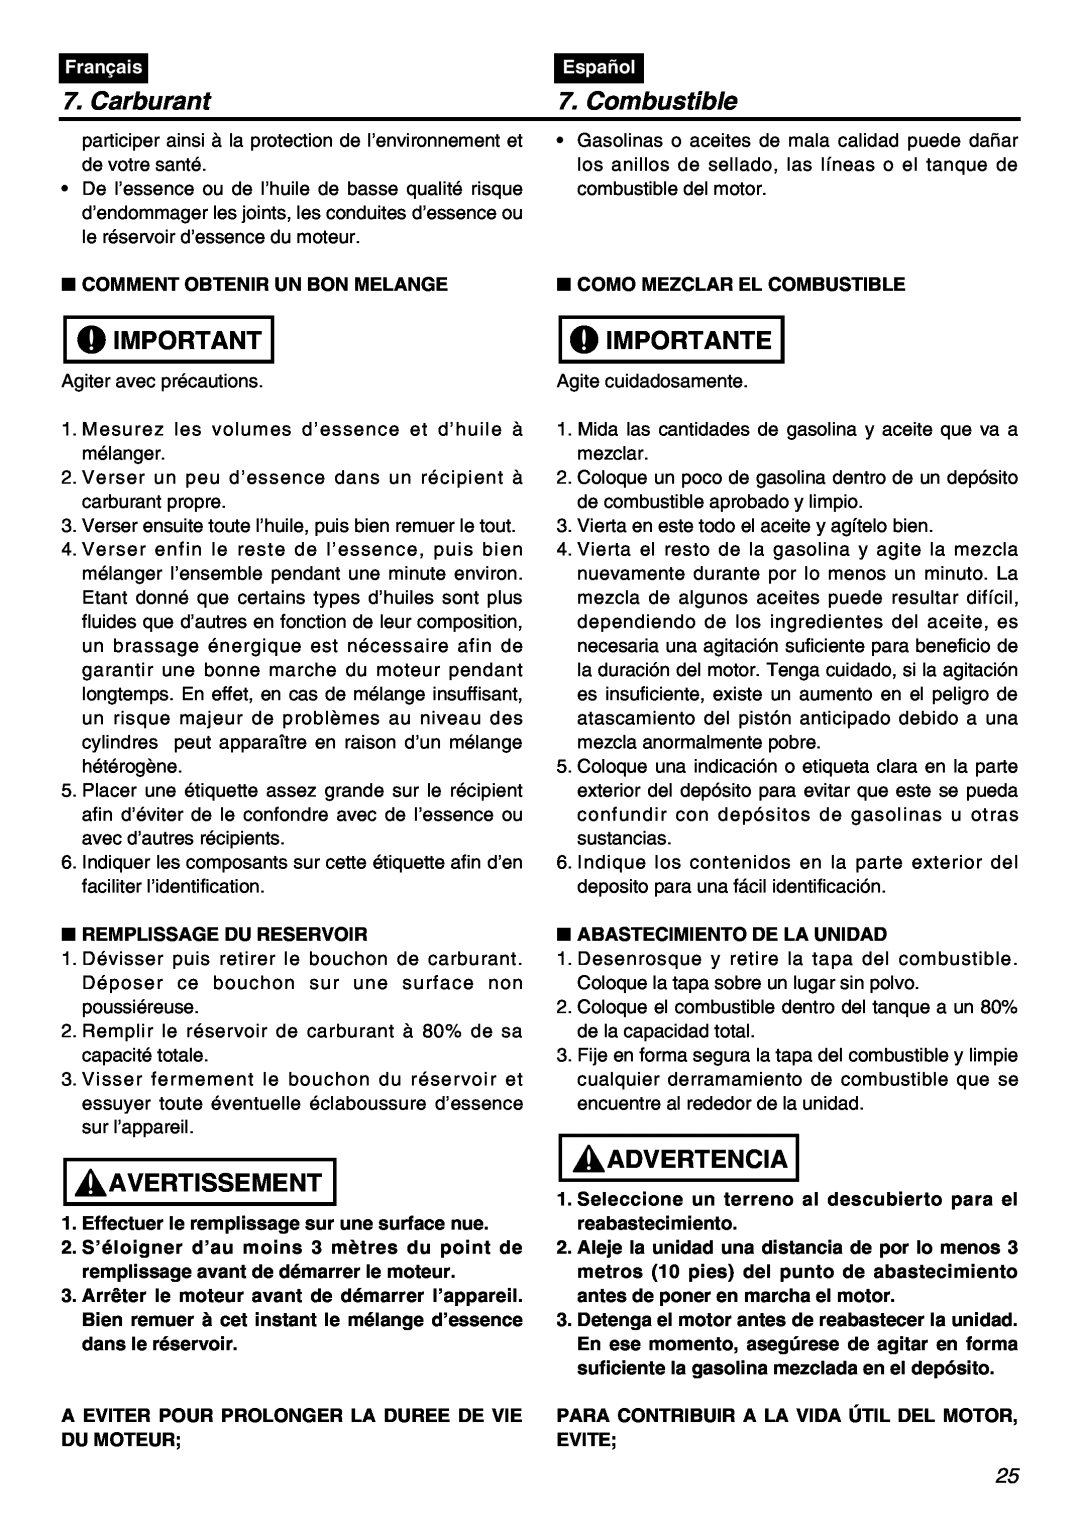 Univex SRTZ2401-CA manual Carburant, Combustible, Importante, Avertissement, Advertencia, Français, Español 